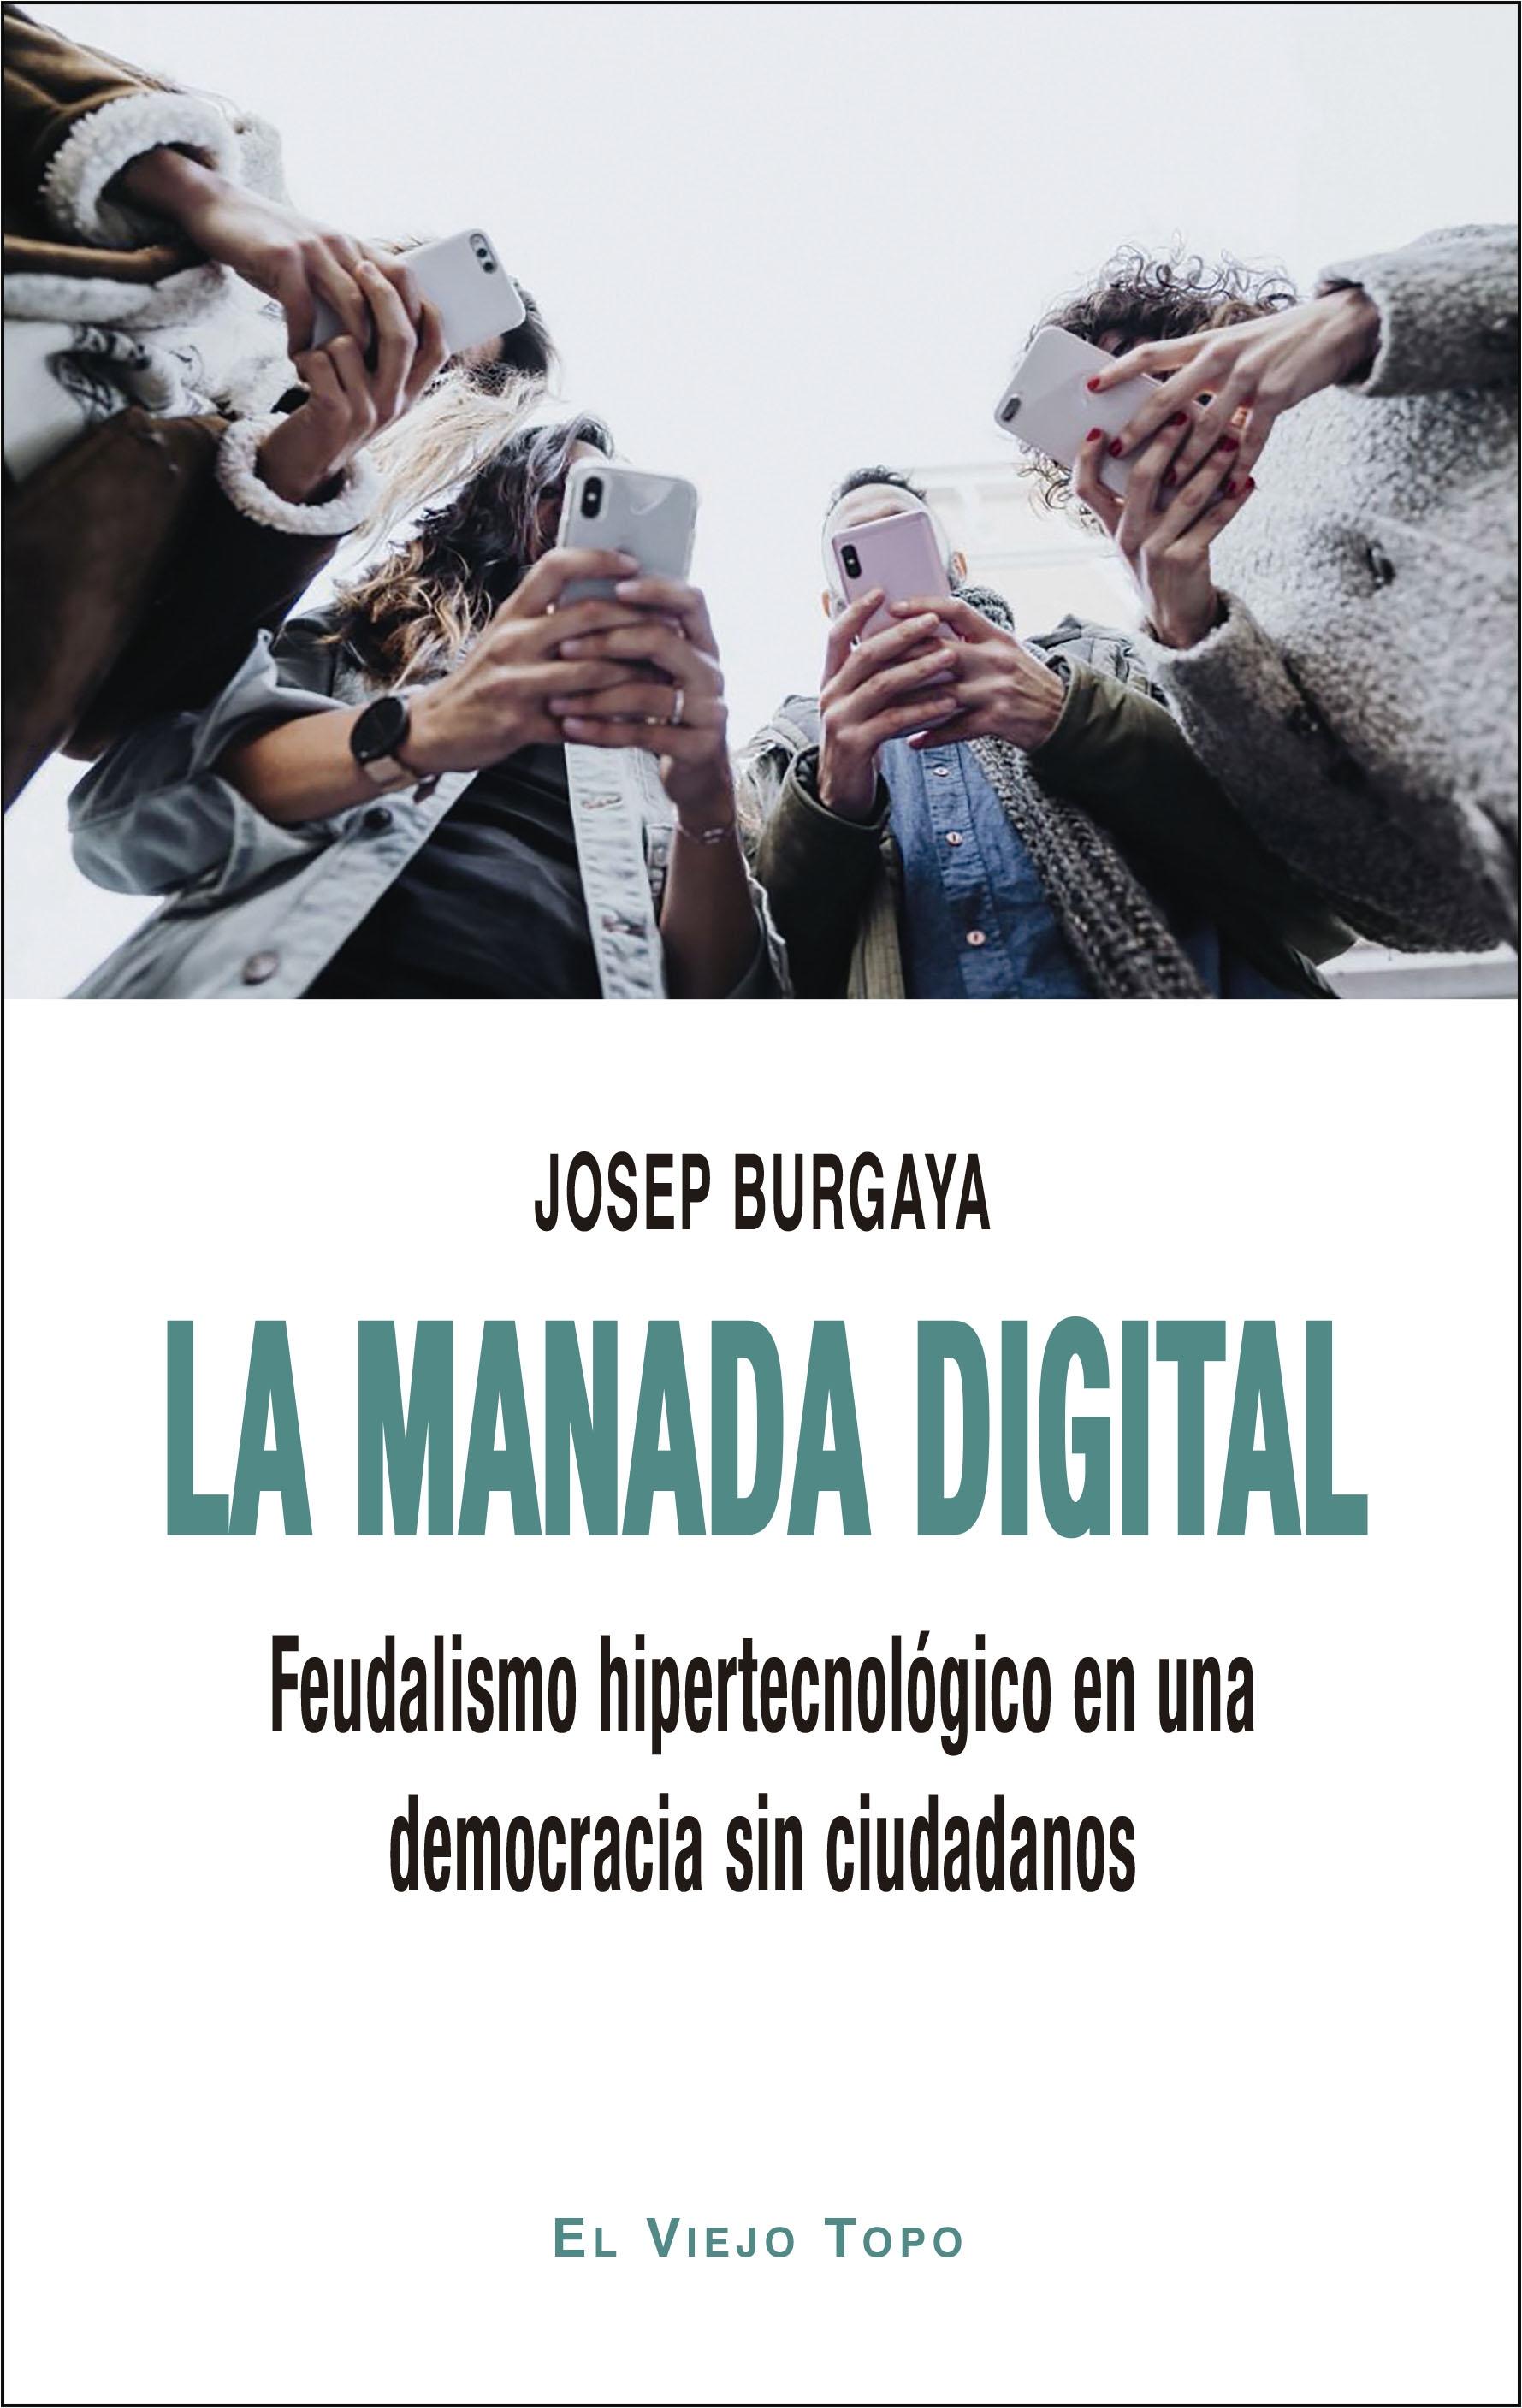 La manada digital "Feudalismo hipertecnológico en una democracia sin ciudadanos"